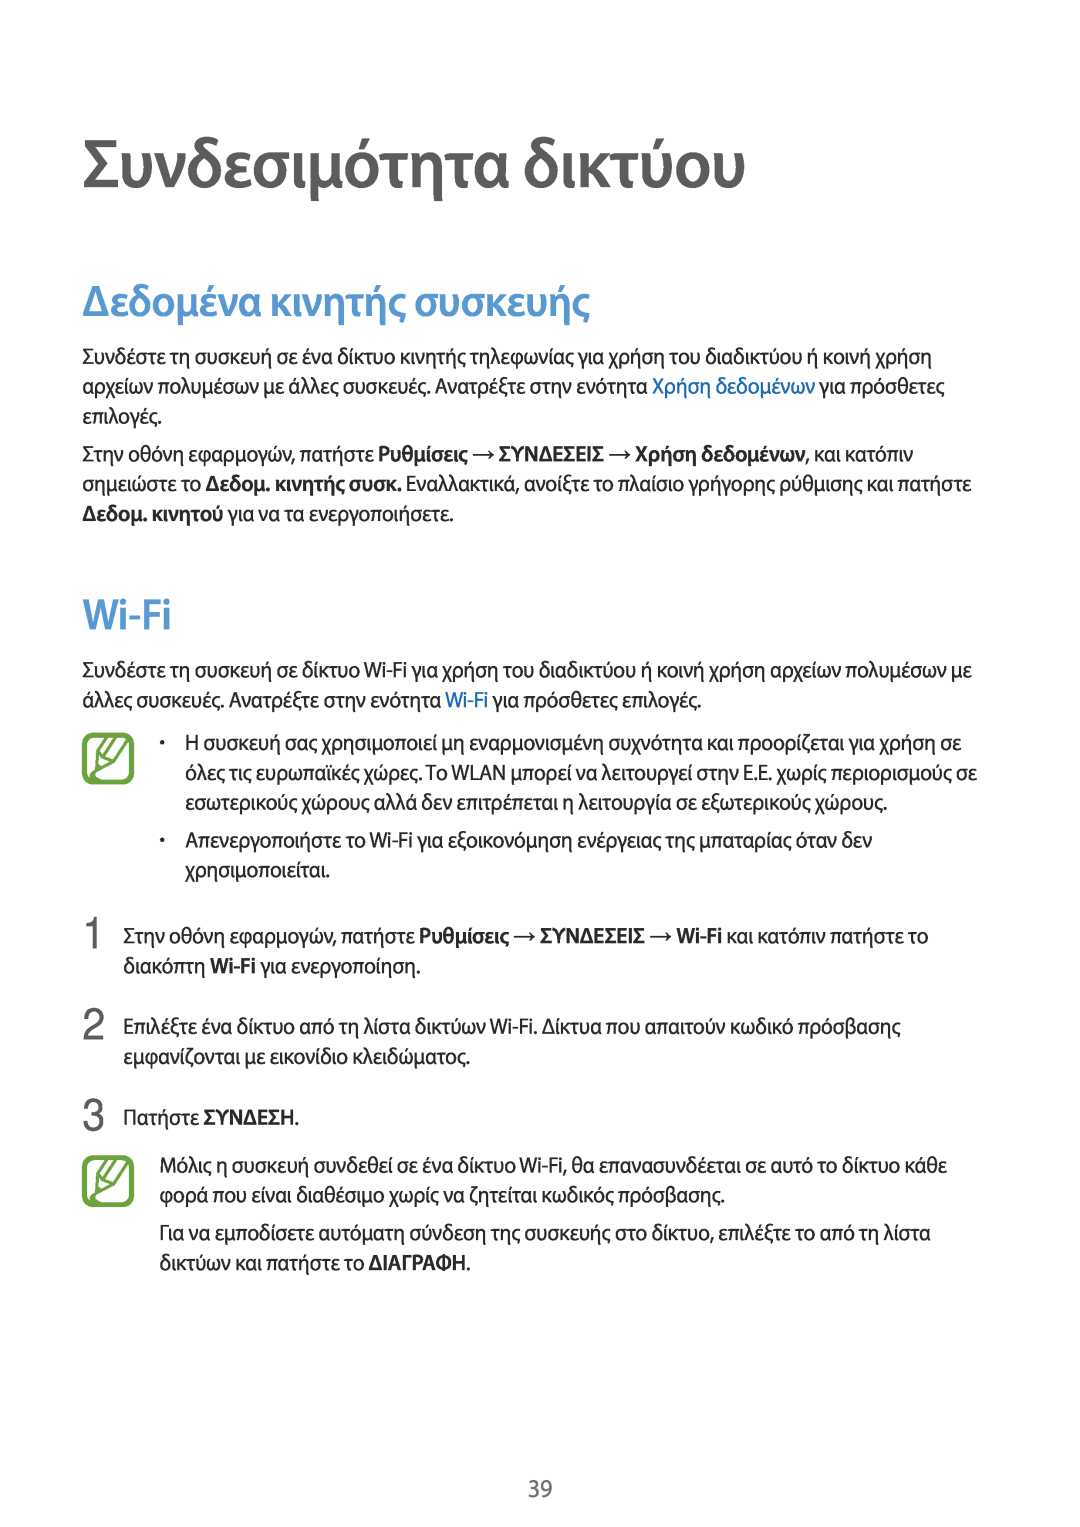 Samsung SM-T705NTSAEUR, SM-T805NTSAEUR, SM-T705NZWAEUR manual Συνδεσιμότητα δικτύου, Δεδομένα κινητής συσκευής, Wi-Fi 